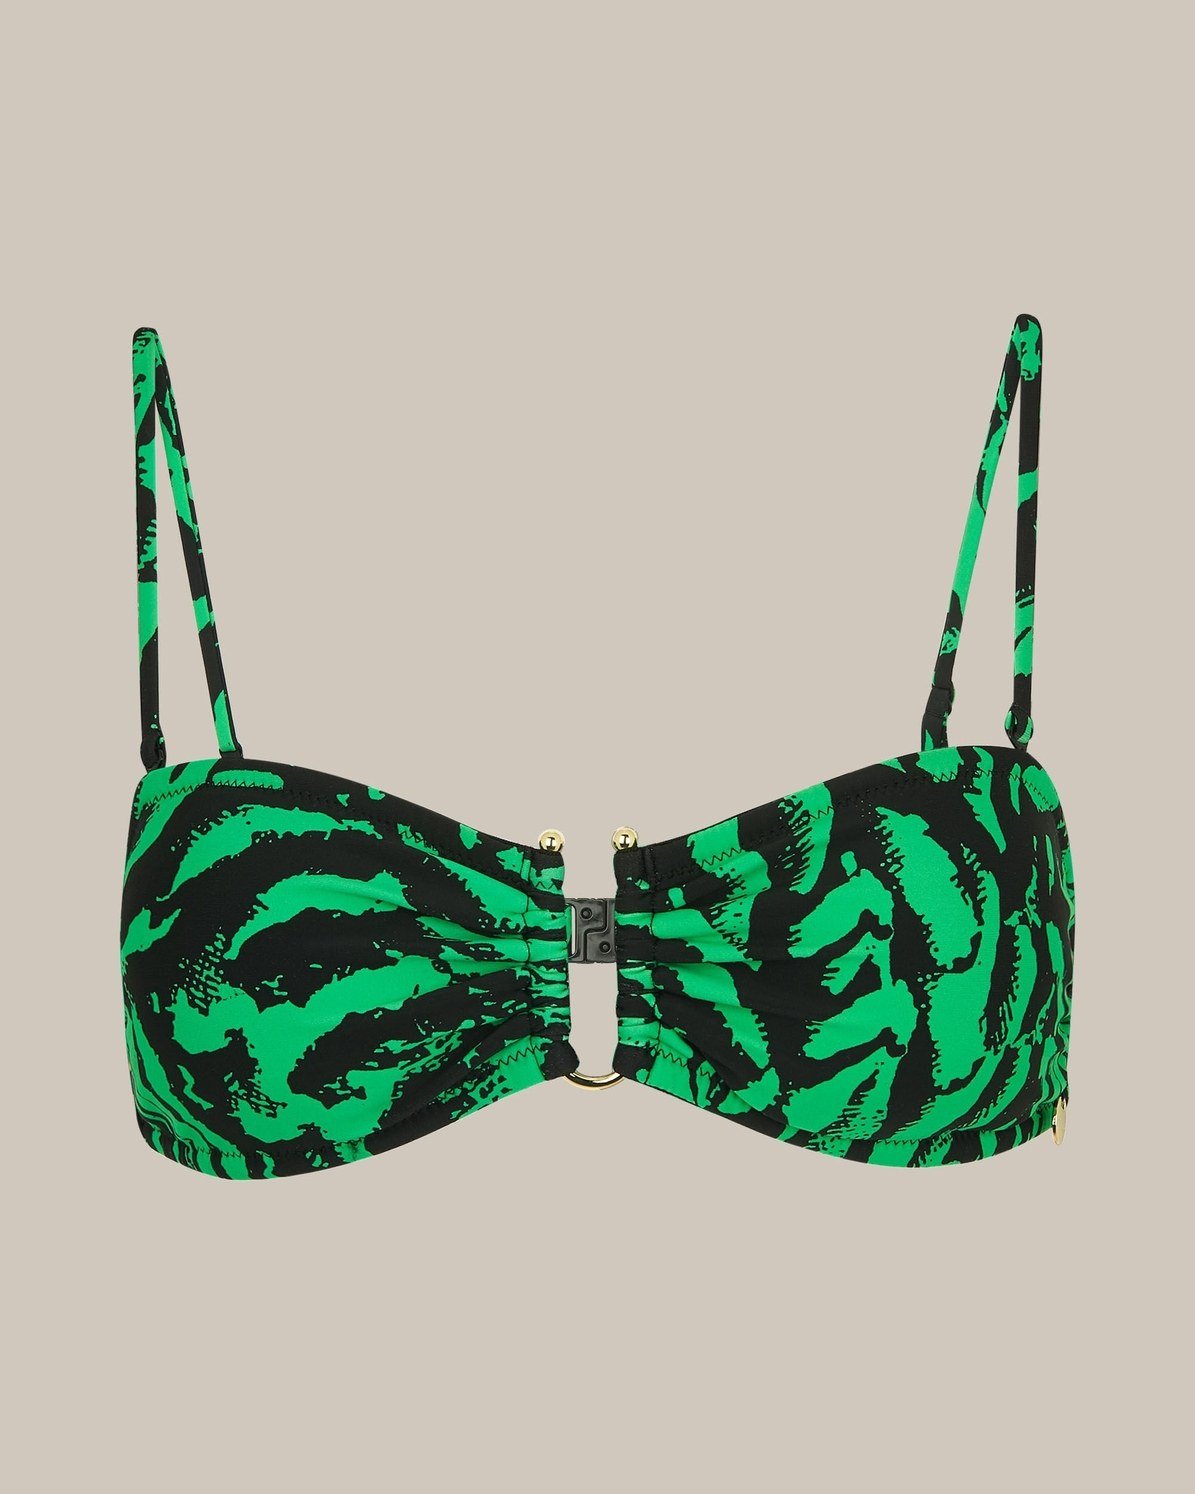 Green/Multi Tiger Animal Print Swimsuit, WHISTLES